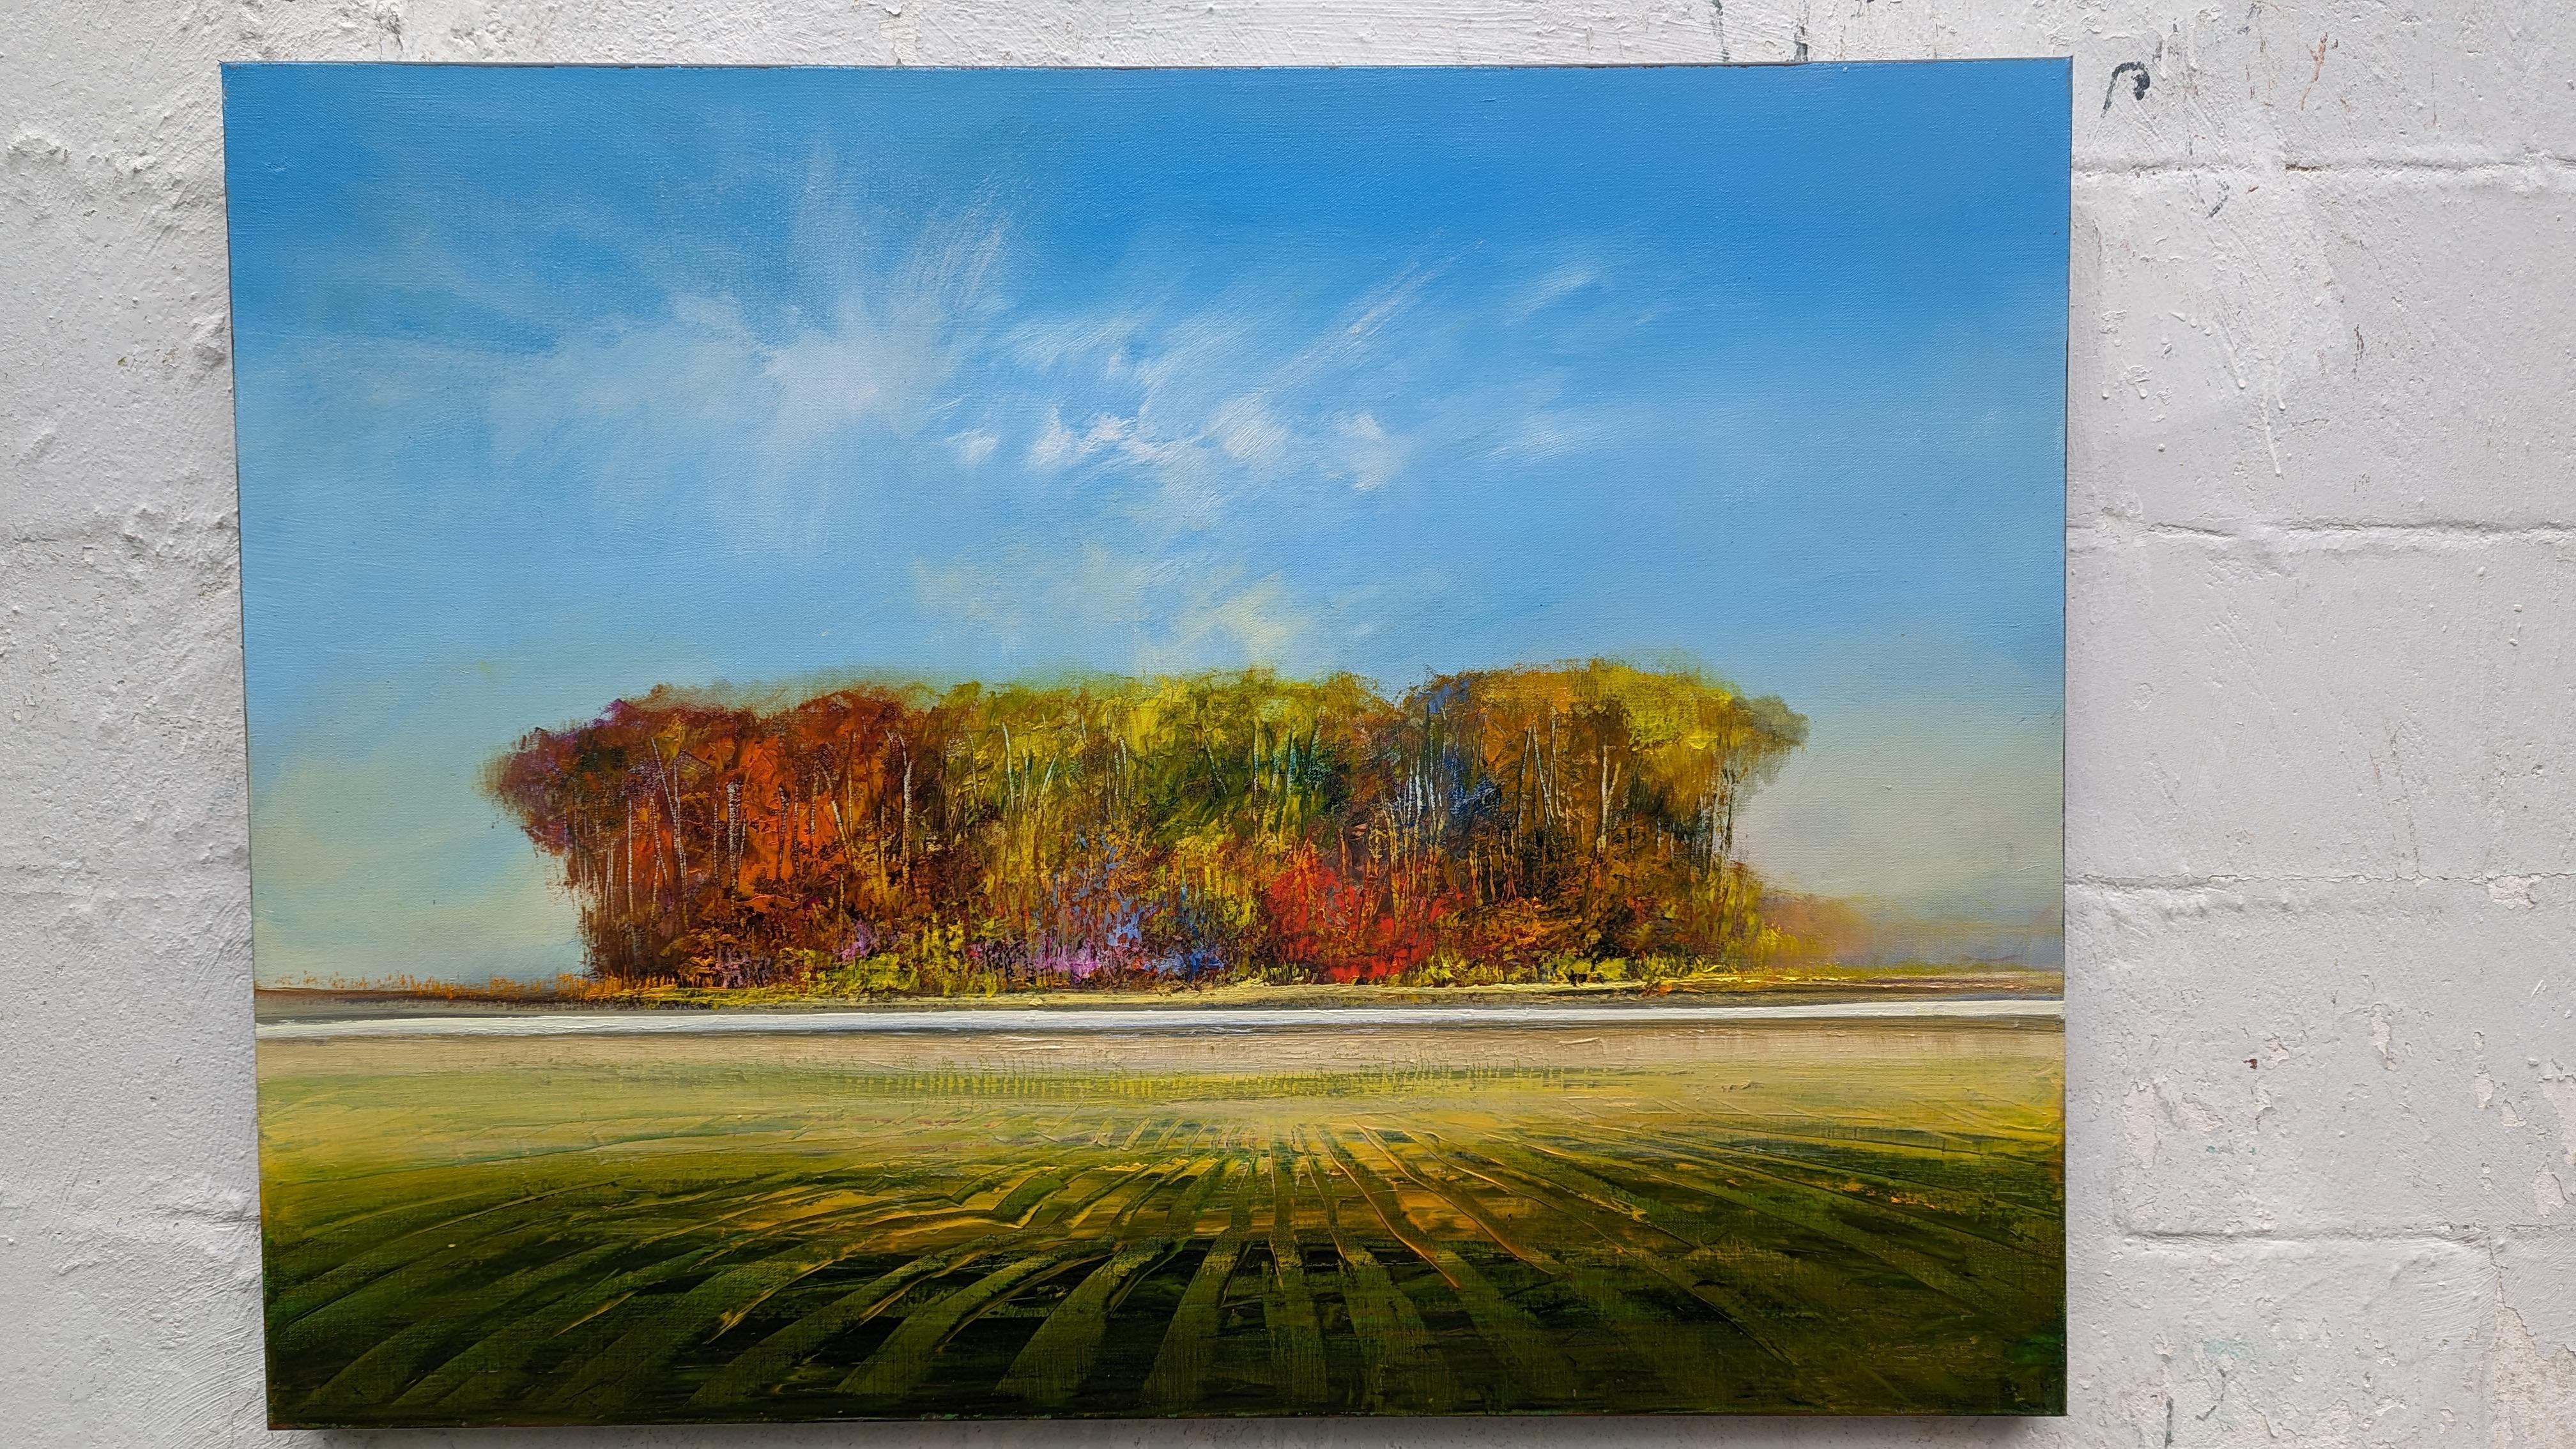 <p>Kommentare des Künstlers<br>Der Künstler George Peebles zeigt in einer expressionistischen Landschaft den Herbst in seiner vollen Pracht. Die grünen Blätter färben sich im Wechsel der Jahreszeiten feurig rot. Atemberaubende Kombinationen von